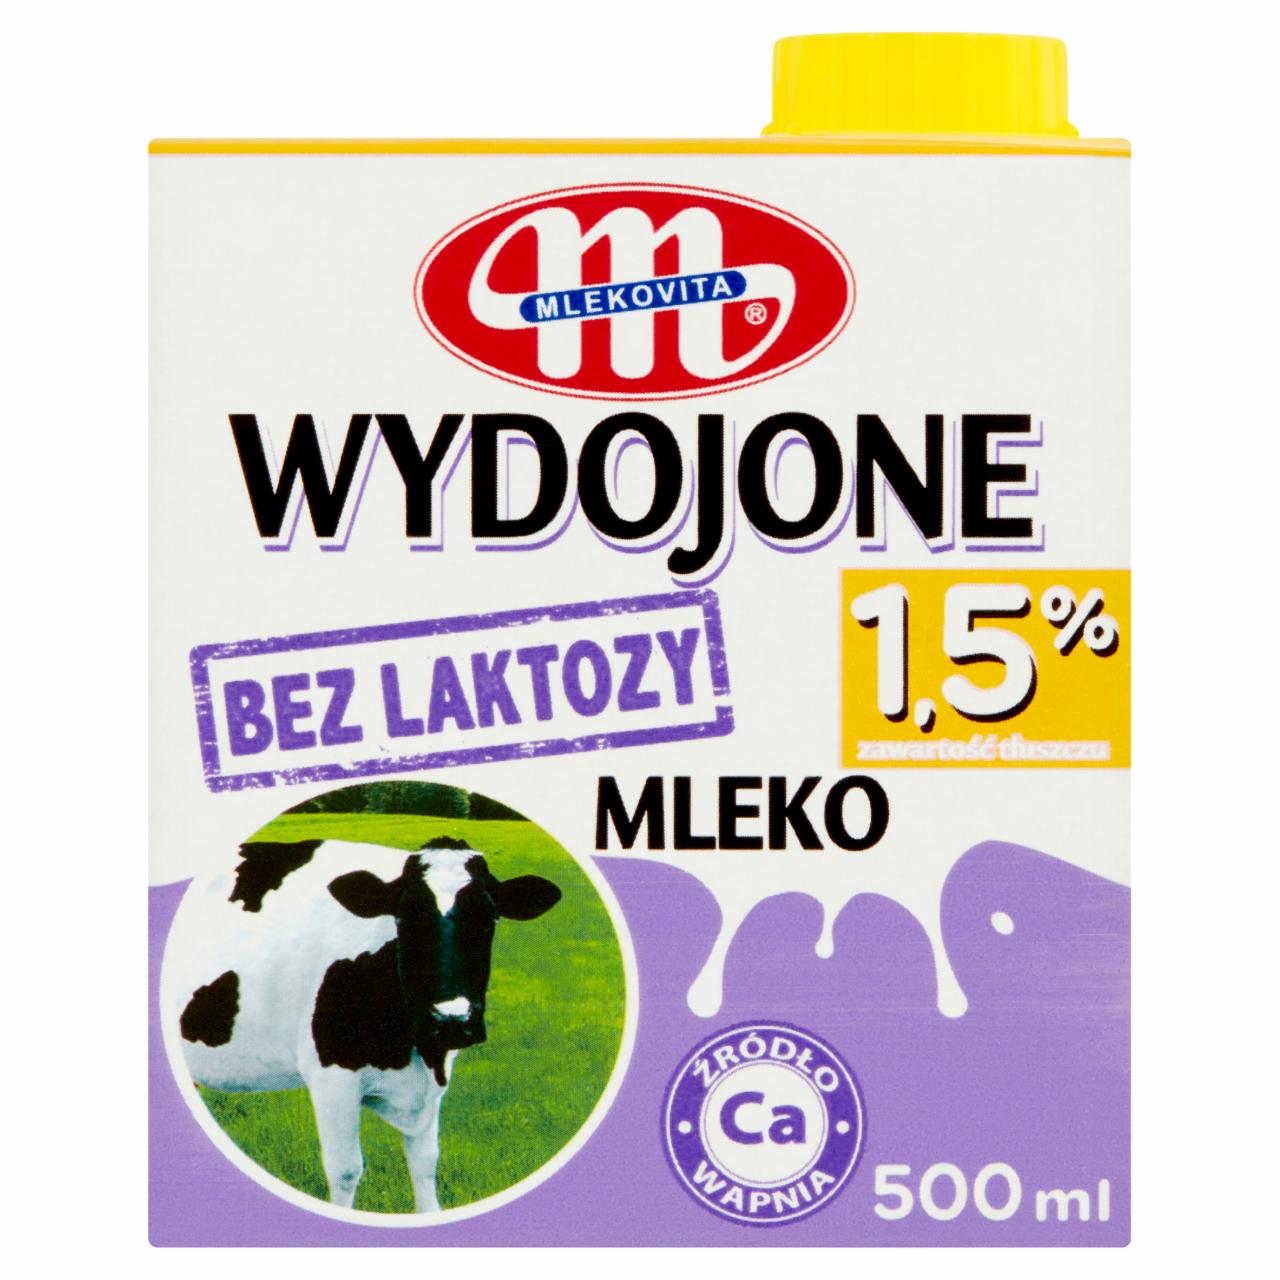 Zdjęcia - Mlekovita Wydojone Mleko bez laktozy 1,5% 500 ml